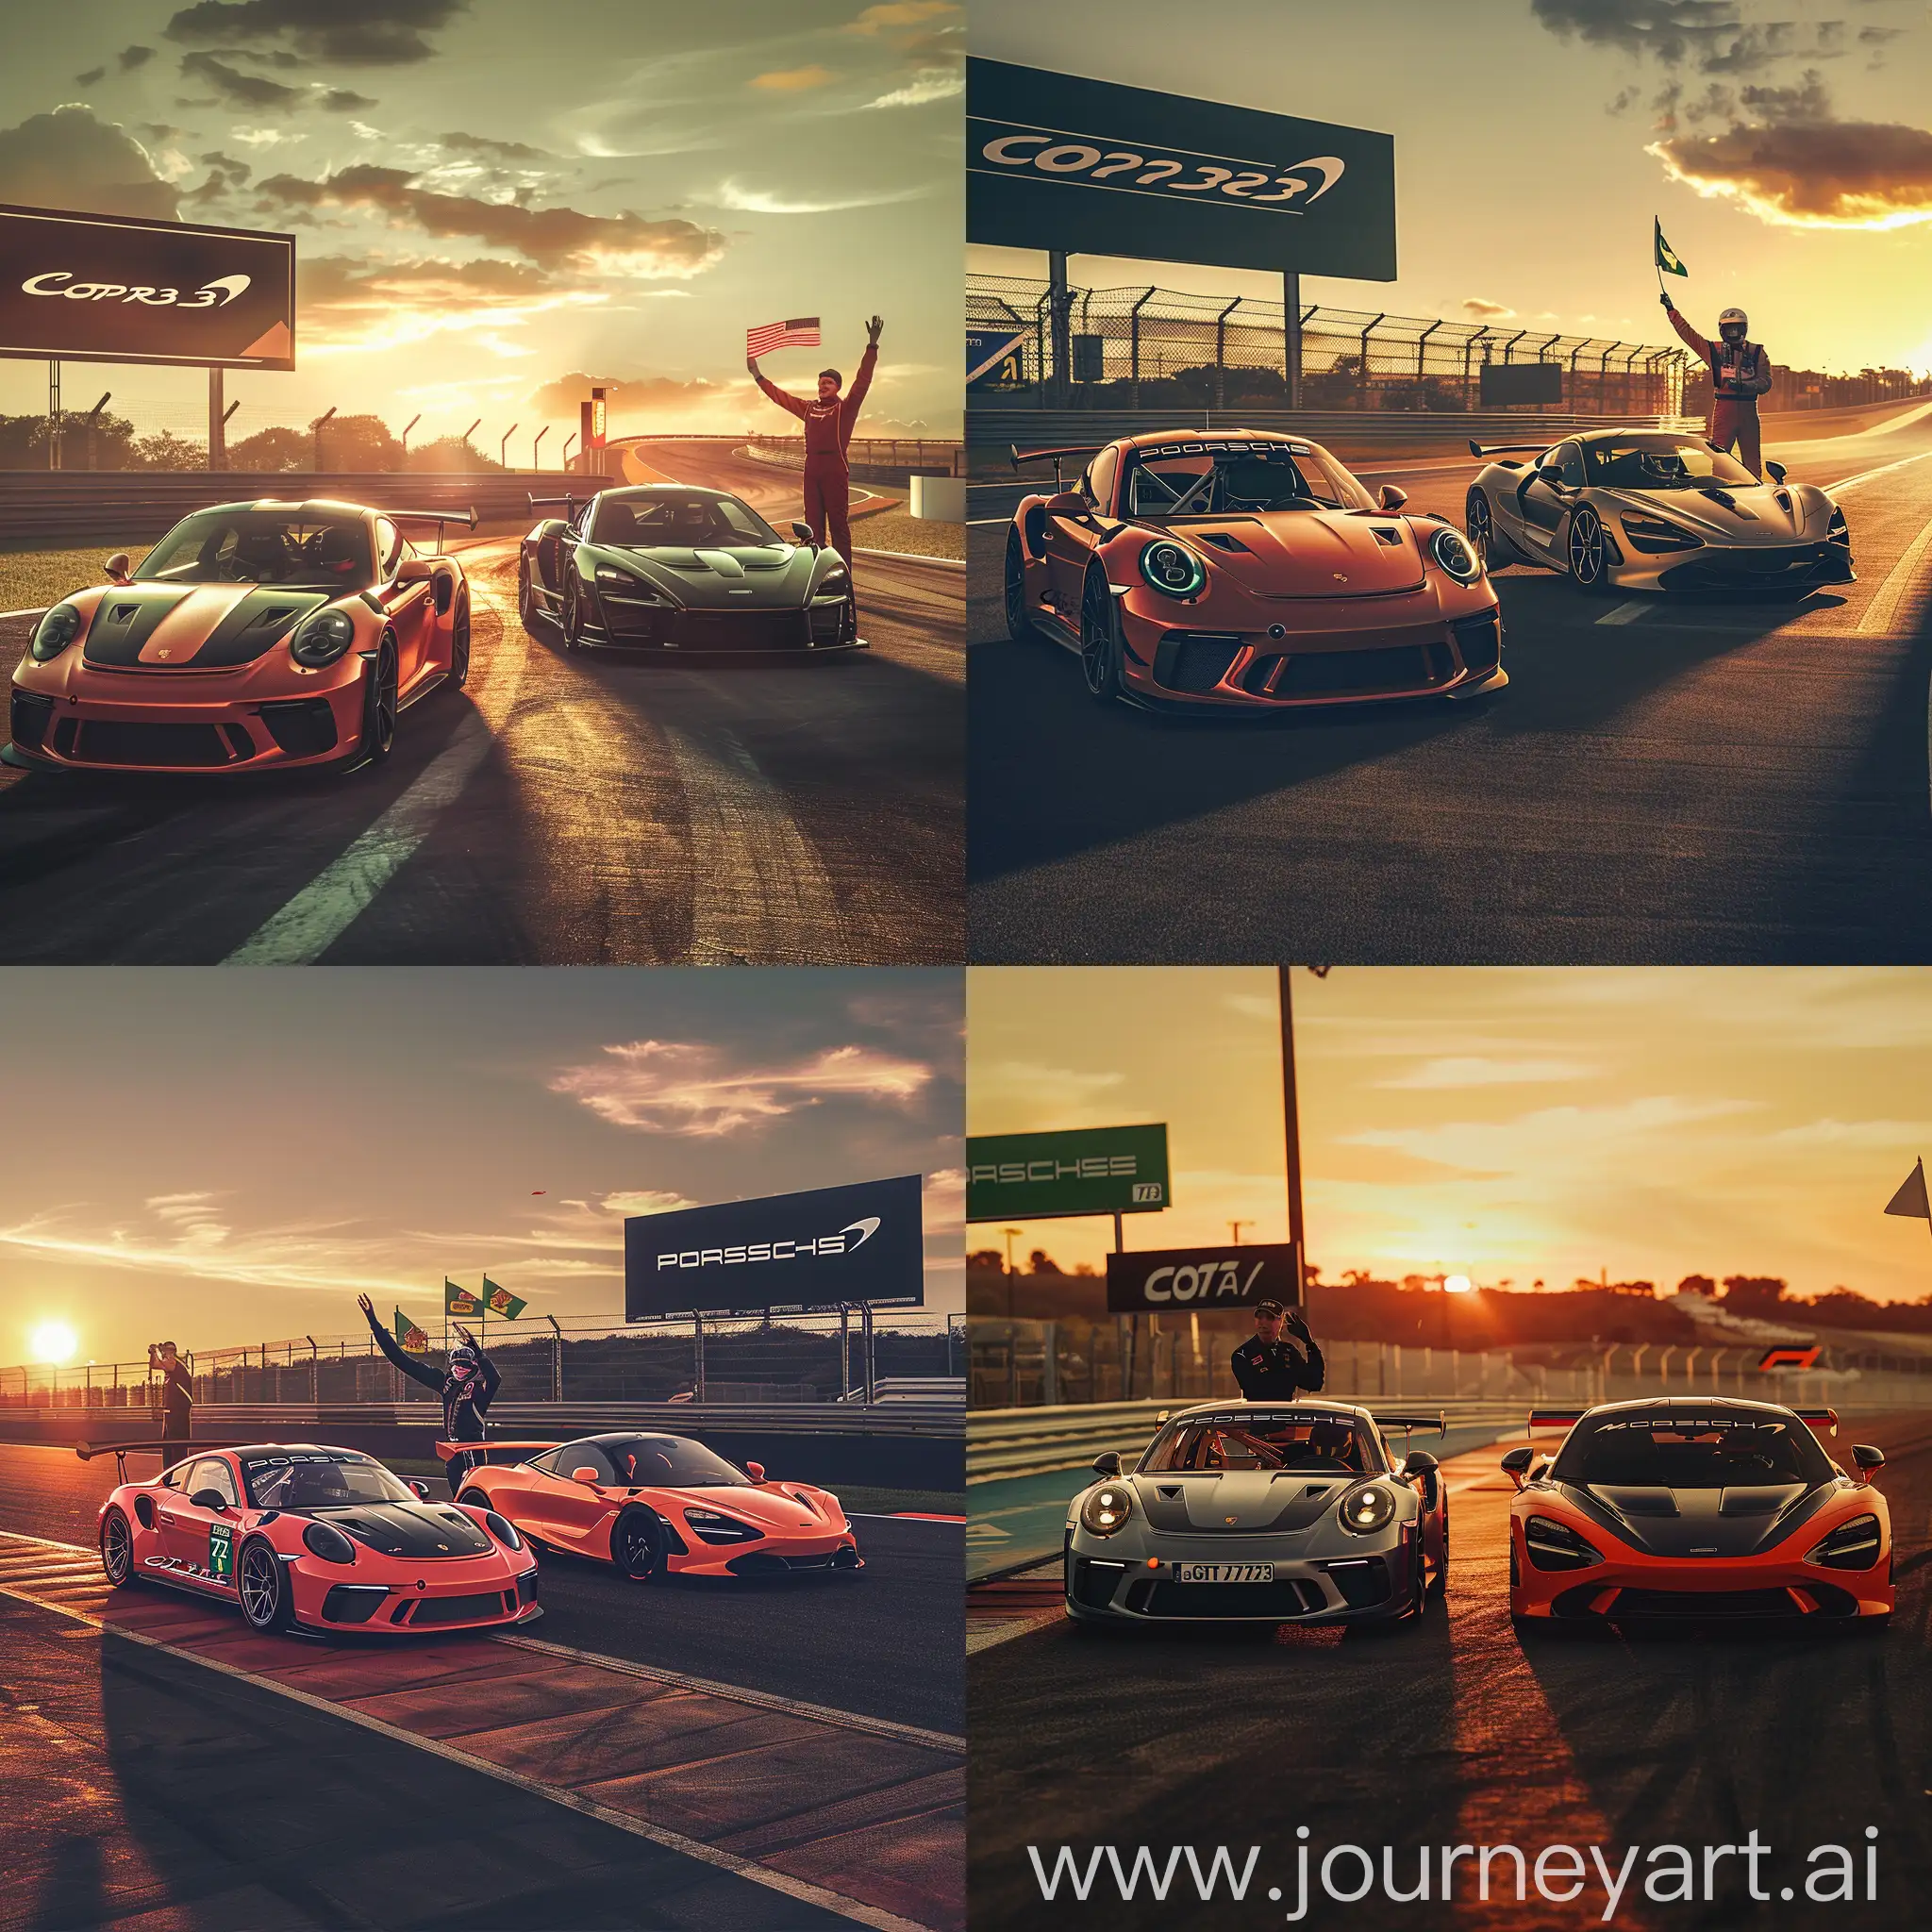 photo realiste, circuit de COTA, Porsche 911 GT3 RS numéro 28 et McLaren 720S GT3 numéro 73 côte à côte sur la piste, coucher de soleil, ombres allongées, panneau d'affichage avec le nom du circuit, commissaire de piste agitant le drapeau vert